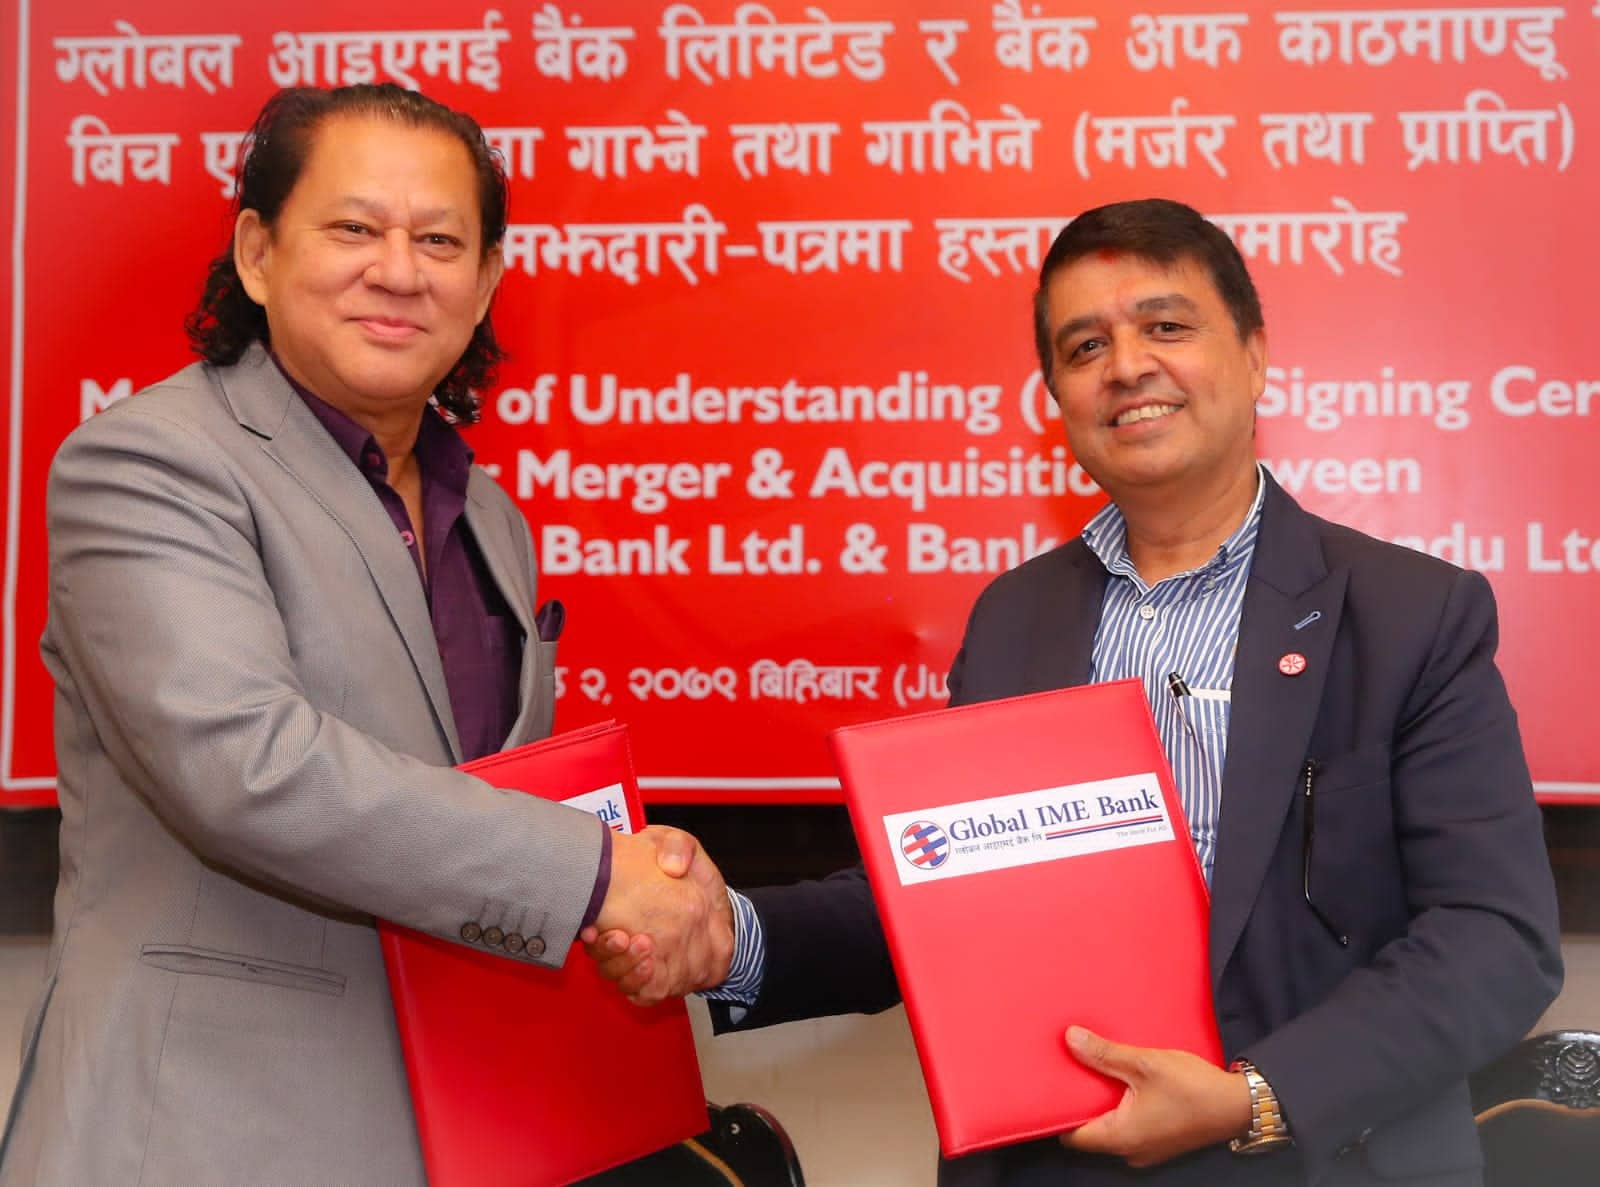 ग्लोबल आईएमई र बैंक अफ काठमाण्डूबीच मर्जरको घोषणा, देशकै ठूलो बैंक बन्ने